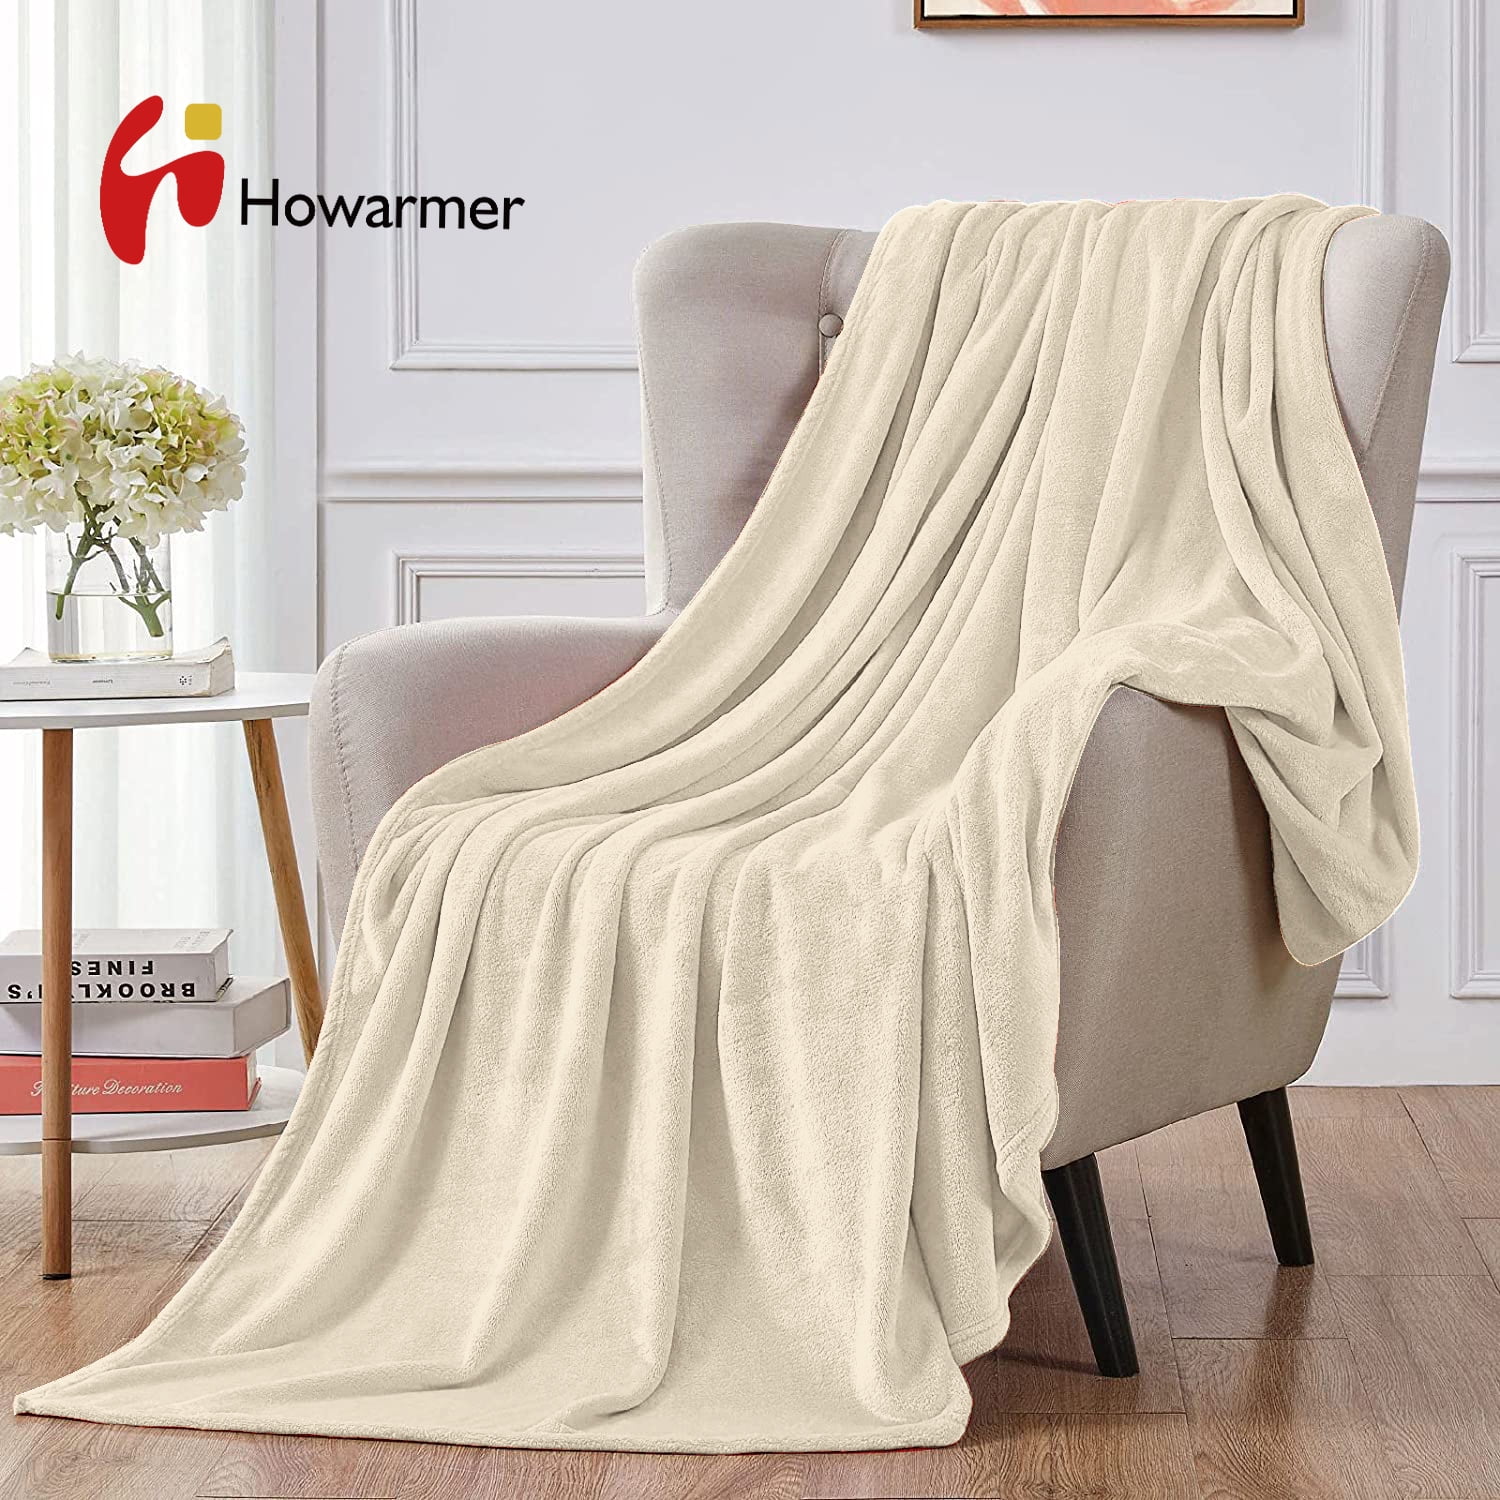 Flannel Blanket Velvety Soft Fluffy For Family Sofa Bed Travel Car Pets Blankets 